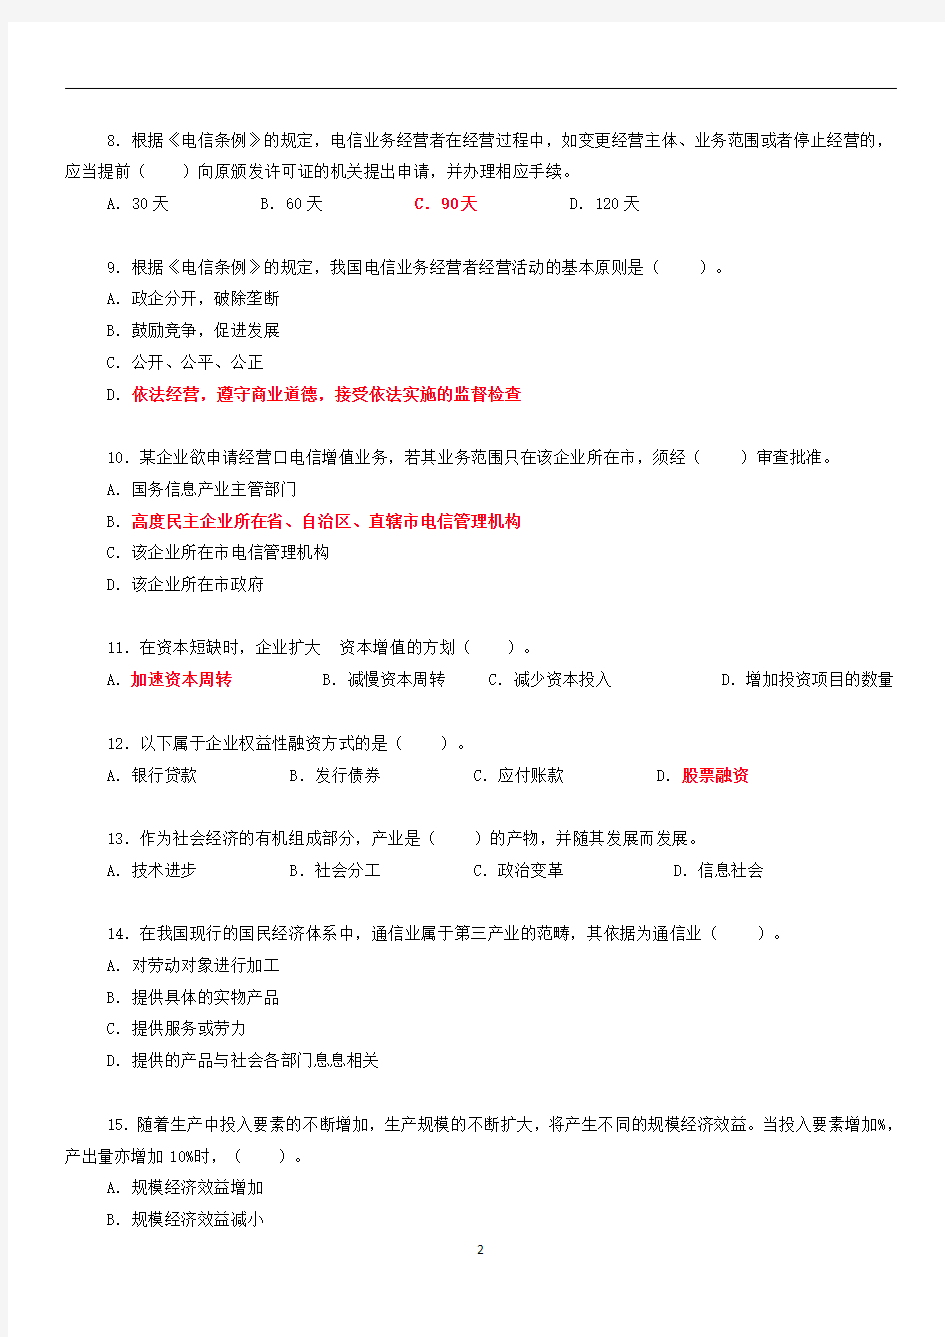 中国邮政 招聘考试试题及答案  总括版